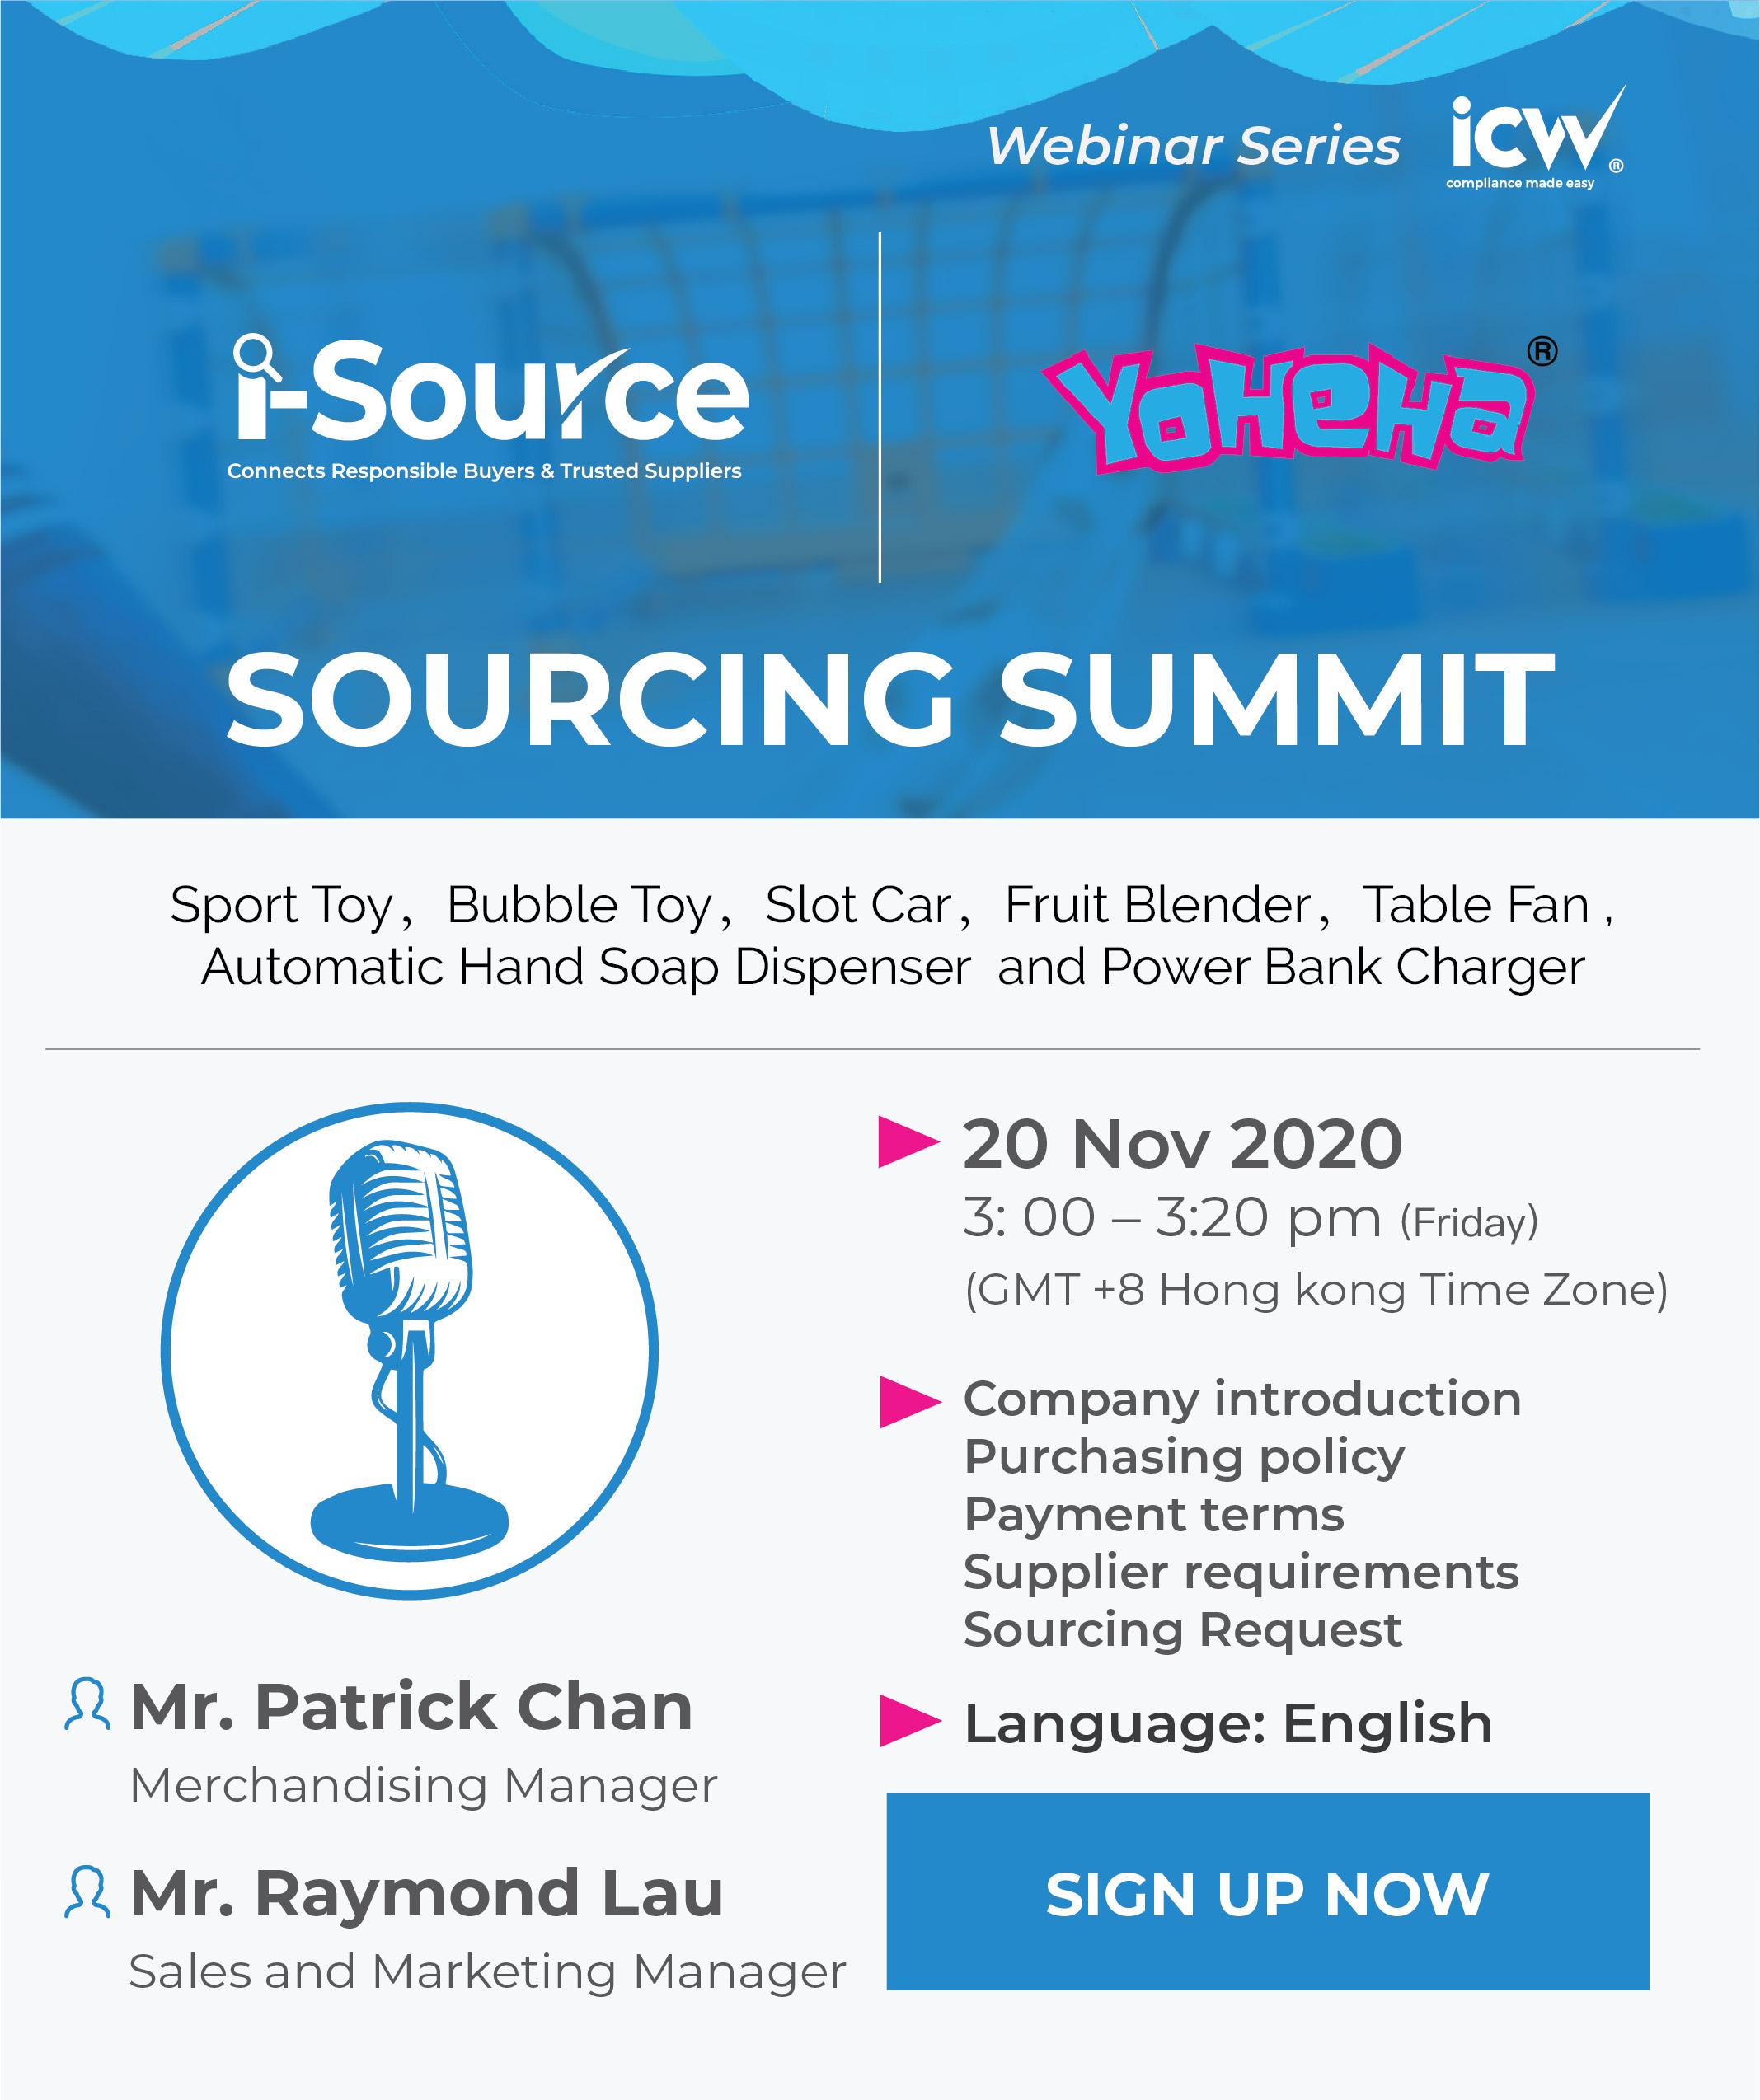 iSource x YOHEHA Sourcing Summit Webinar - ICW